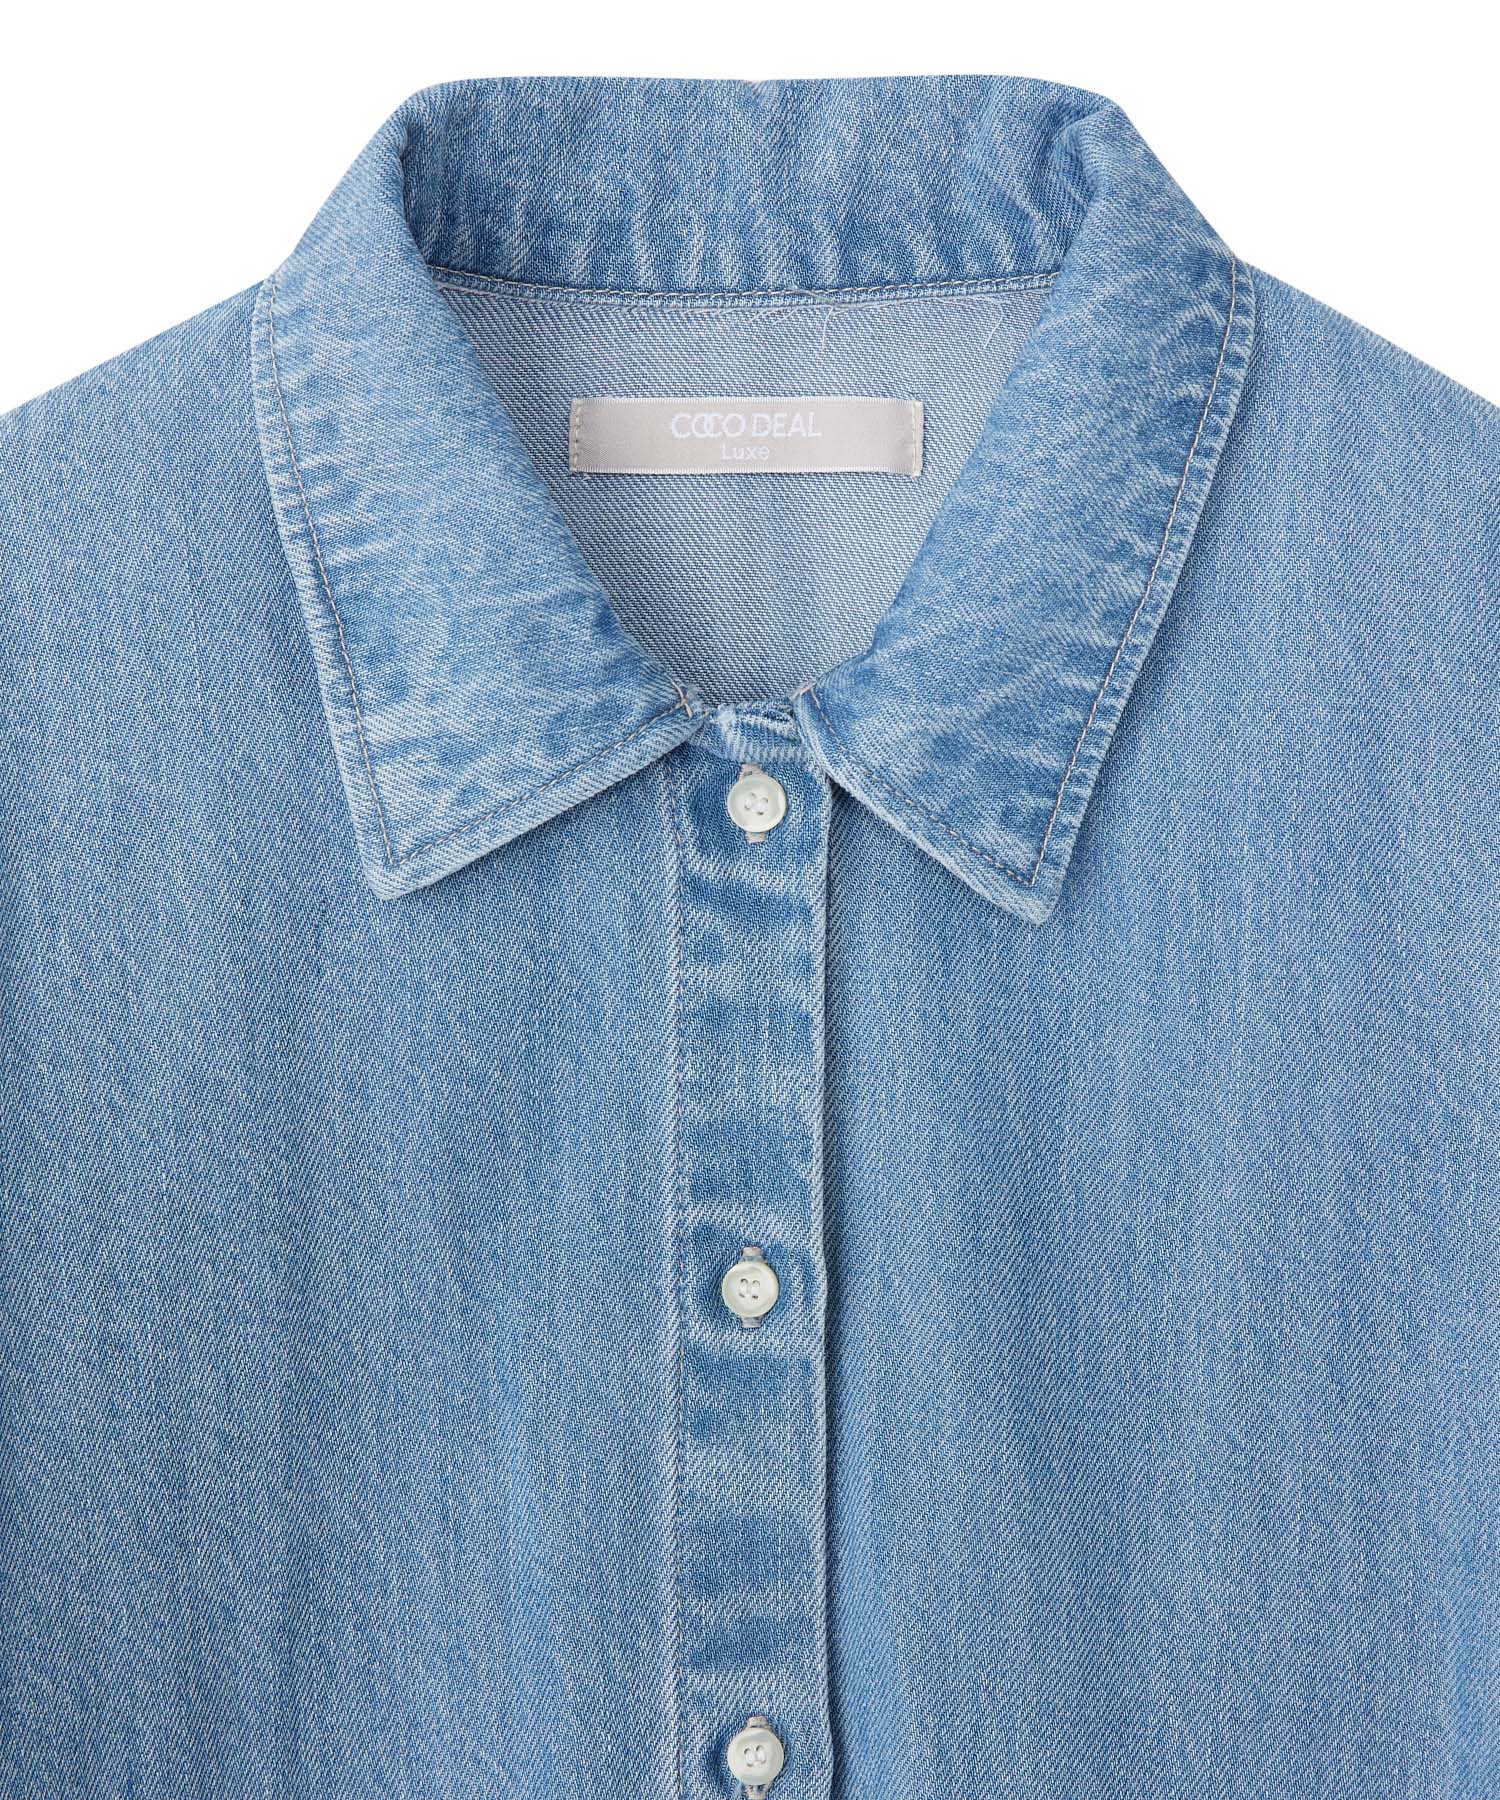 【新品・未使用】COCO DEAL カラーデニムシャツジャケット